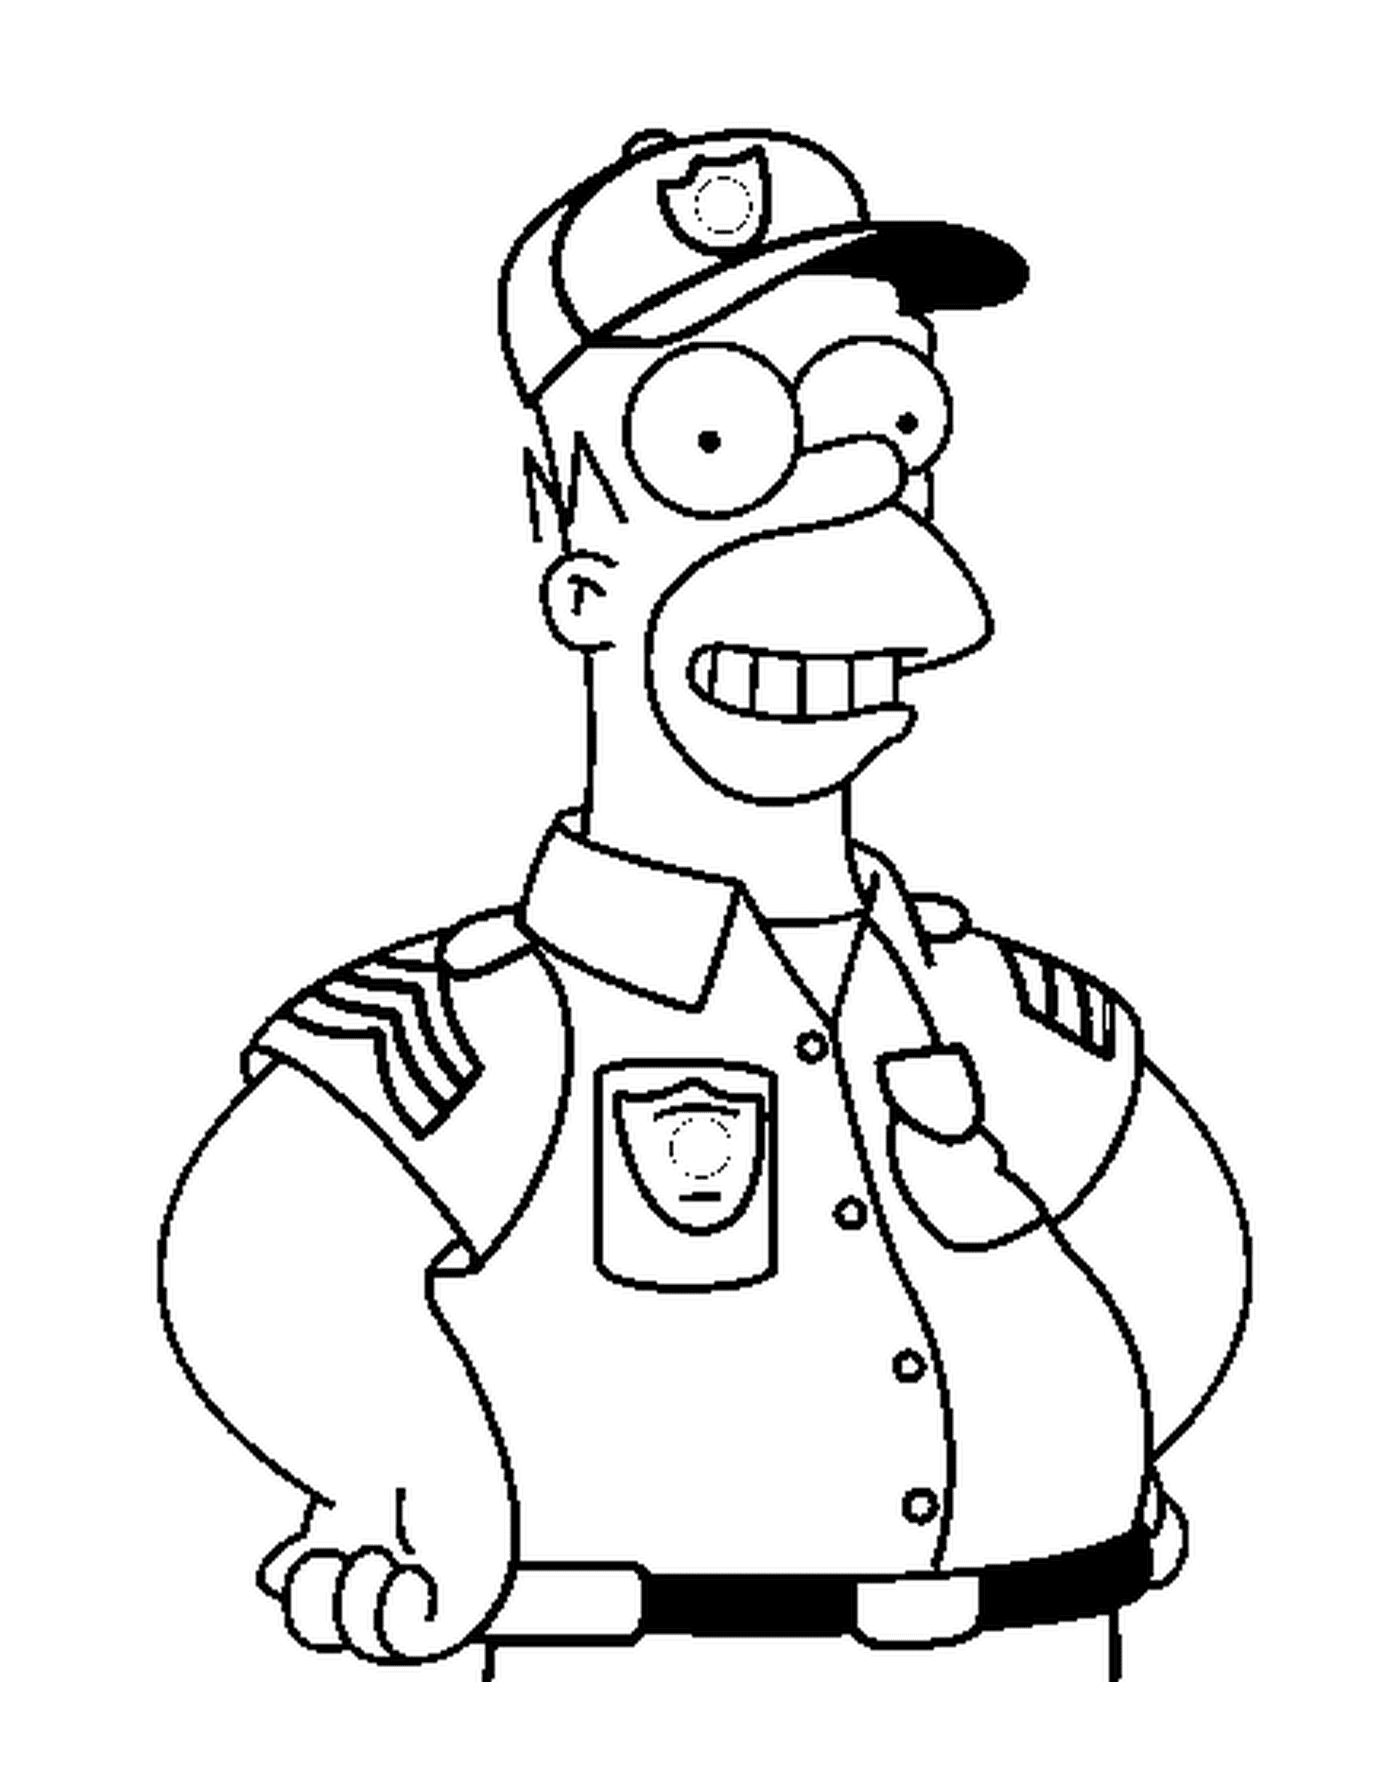  Homer als mutiger Polizist 